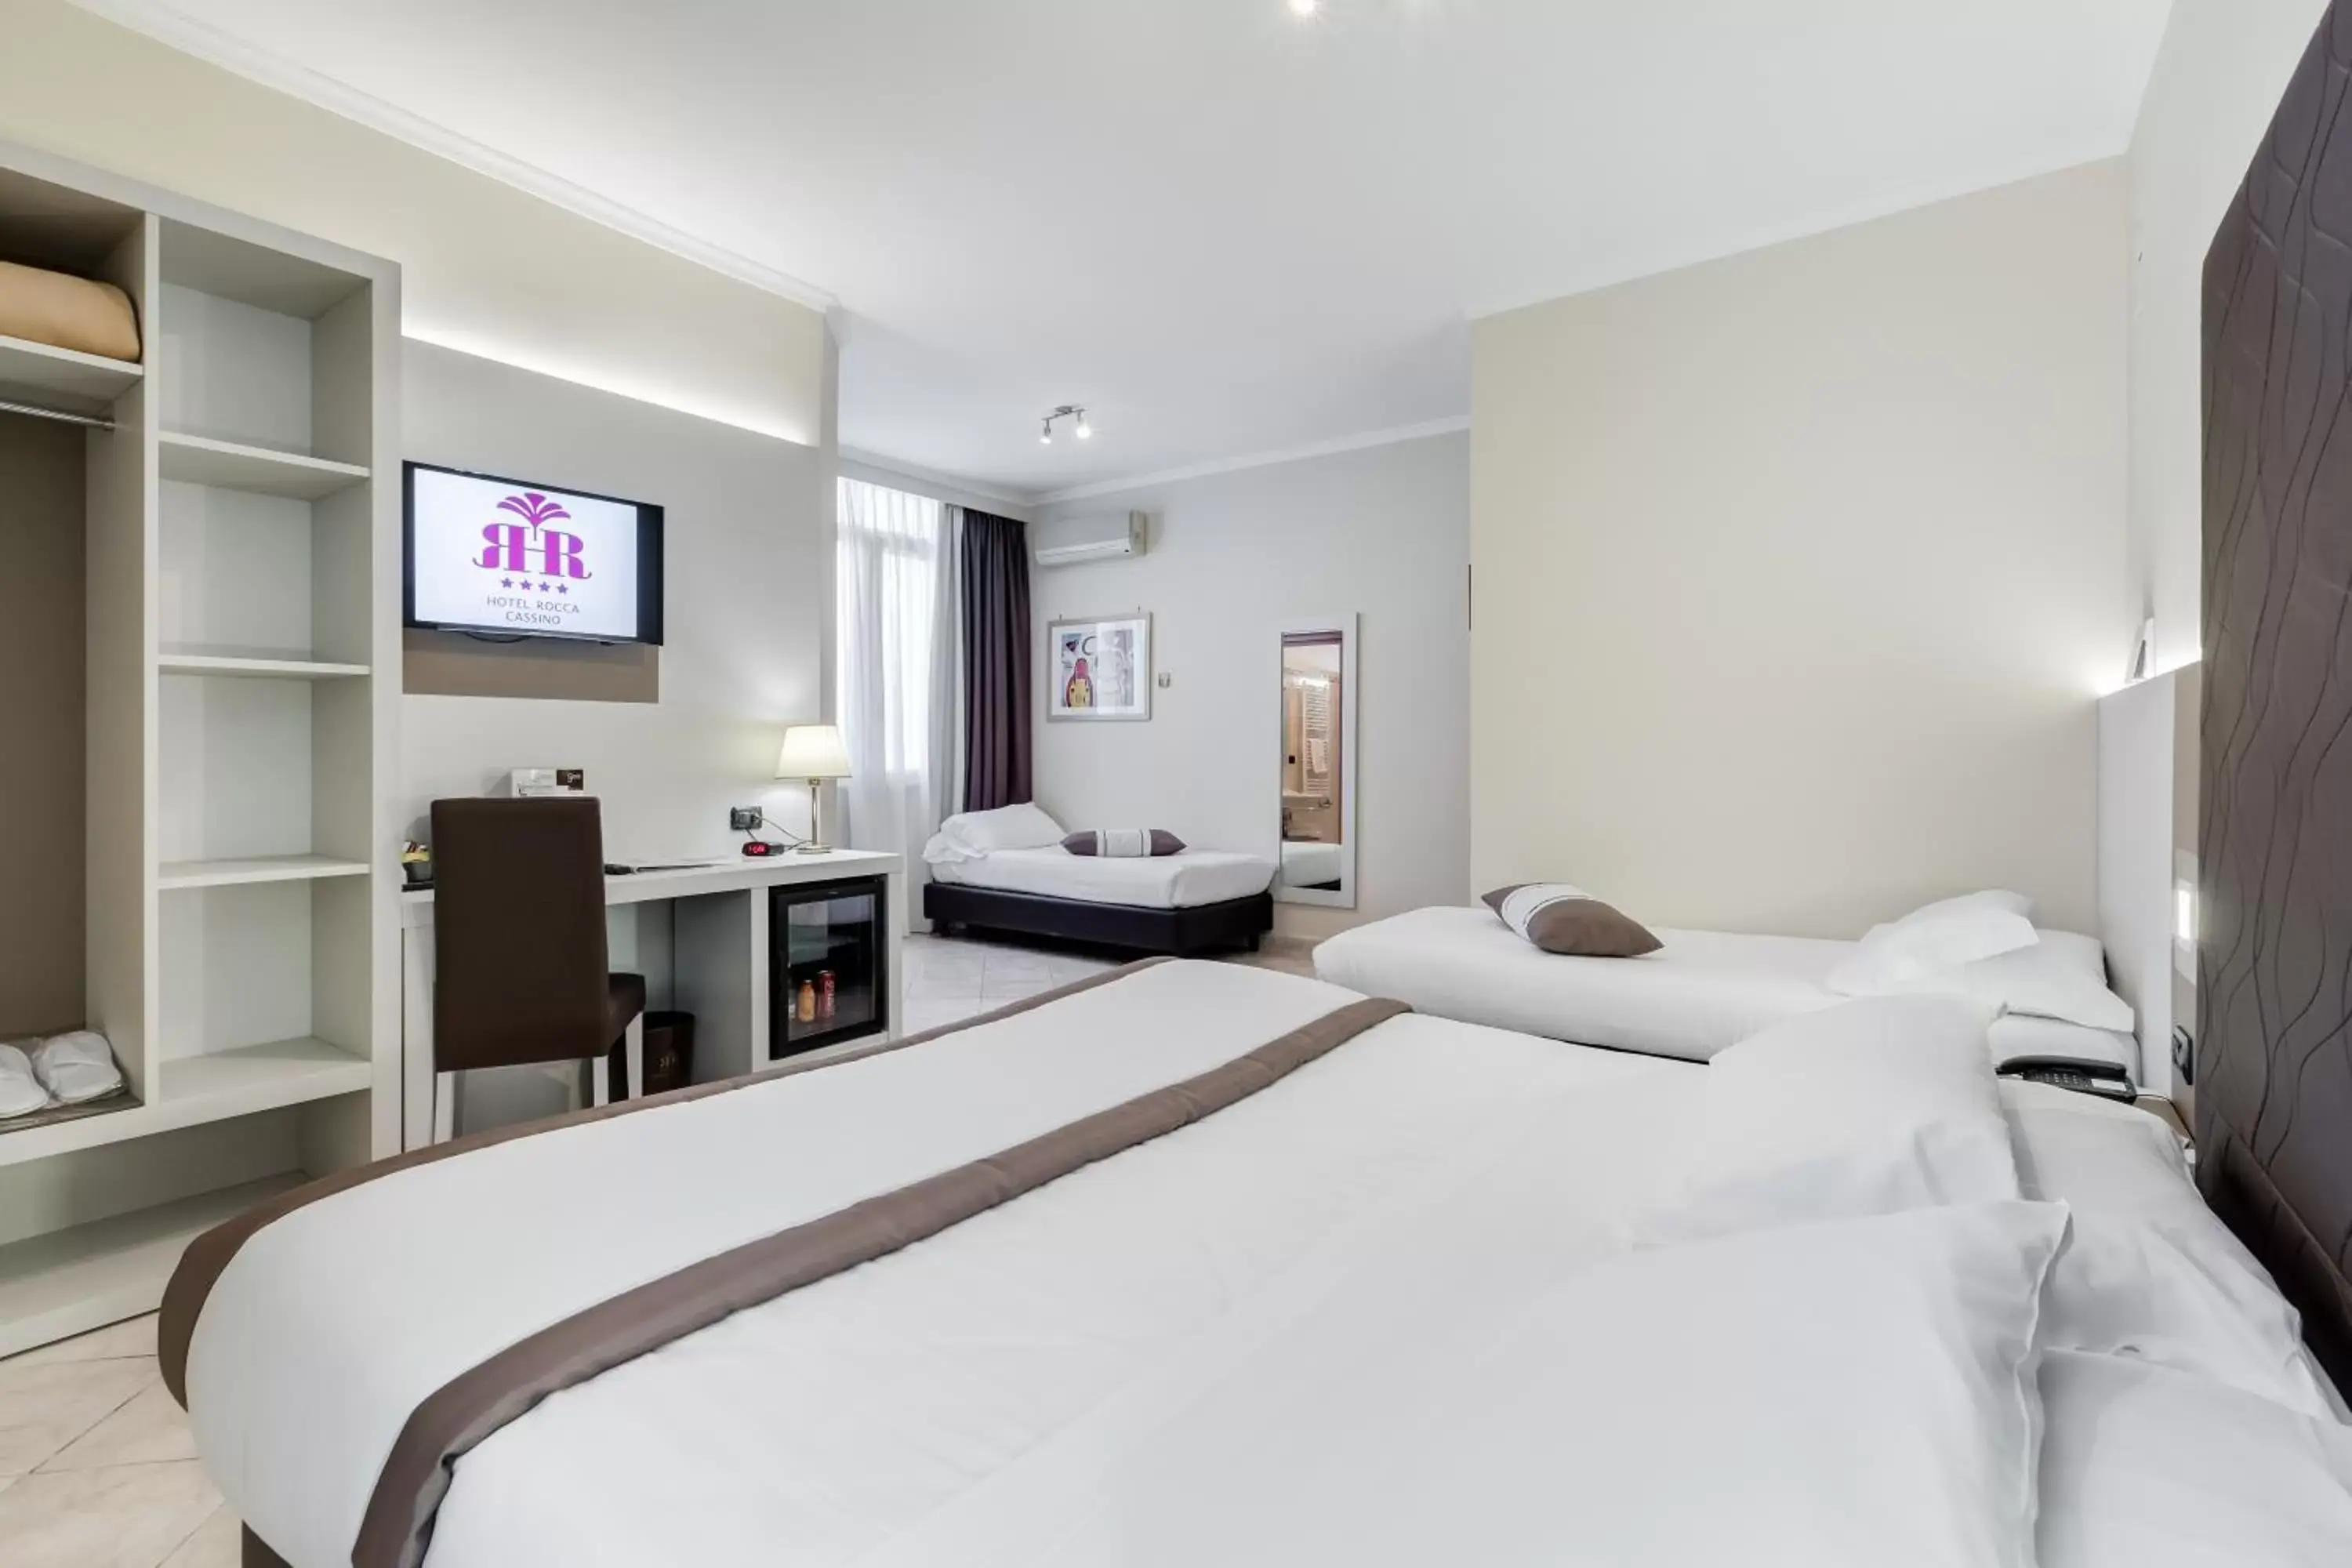 Bedroom, Bed in Best Western Hotel Rocca